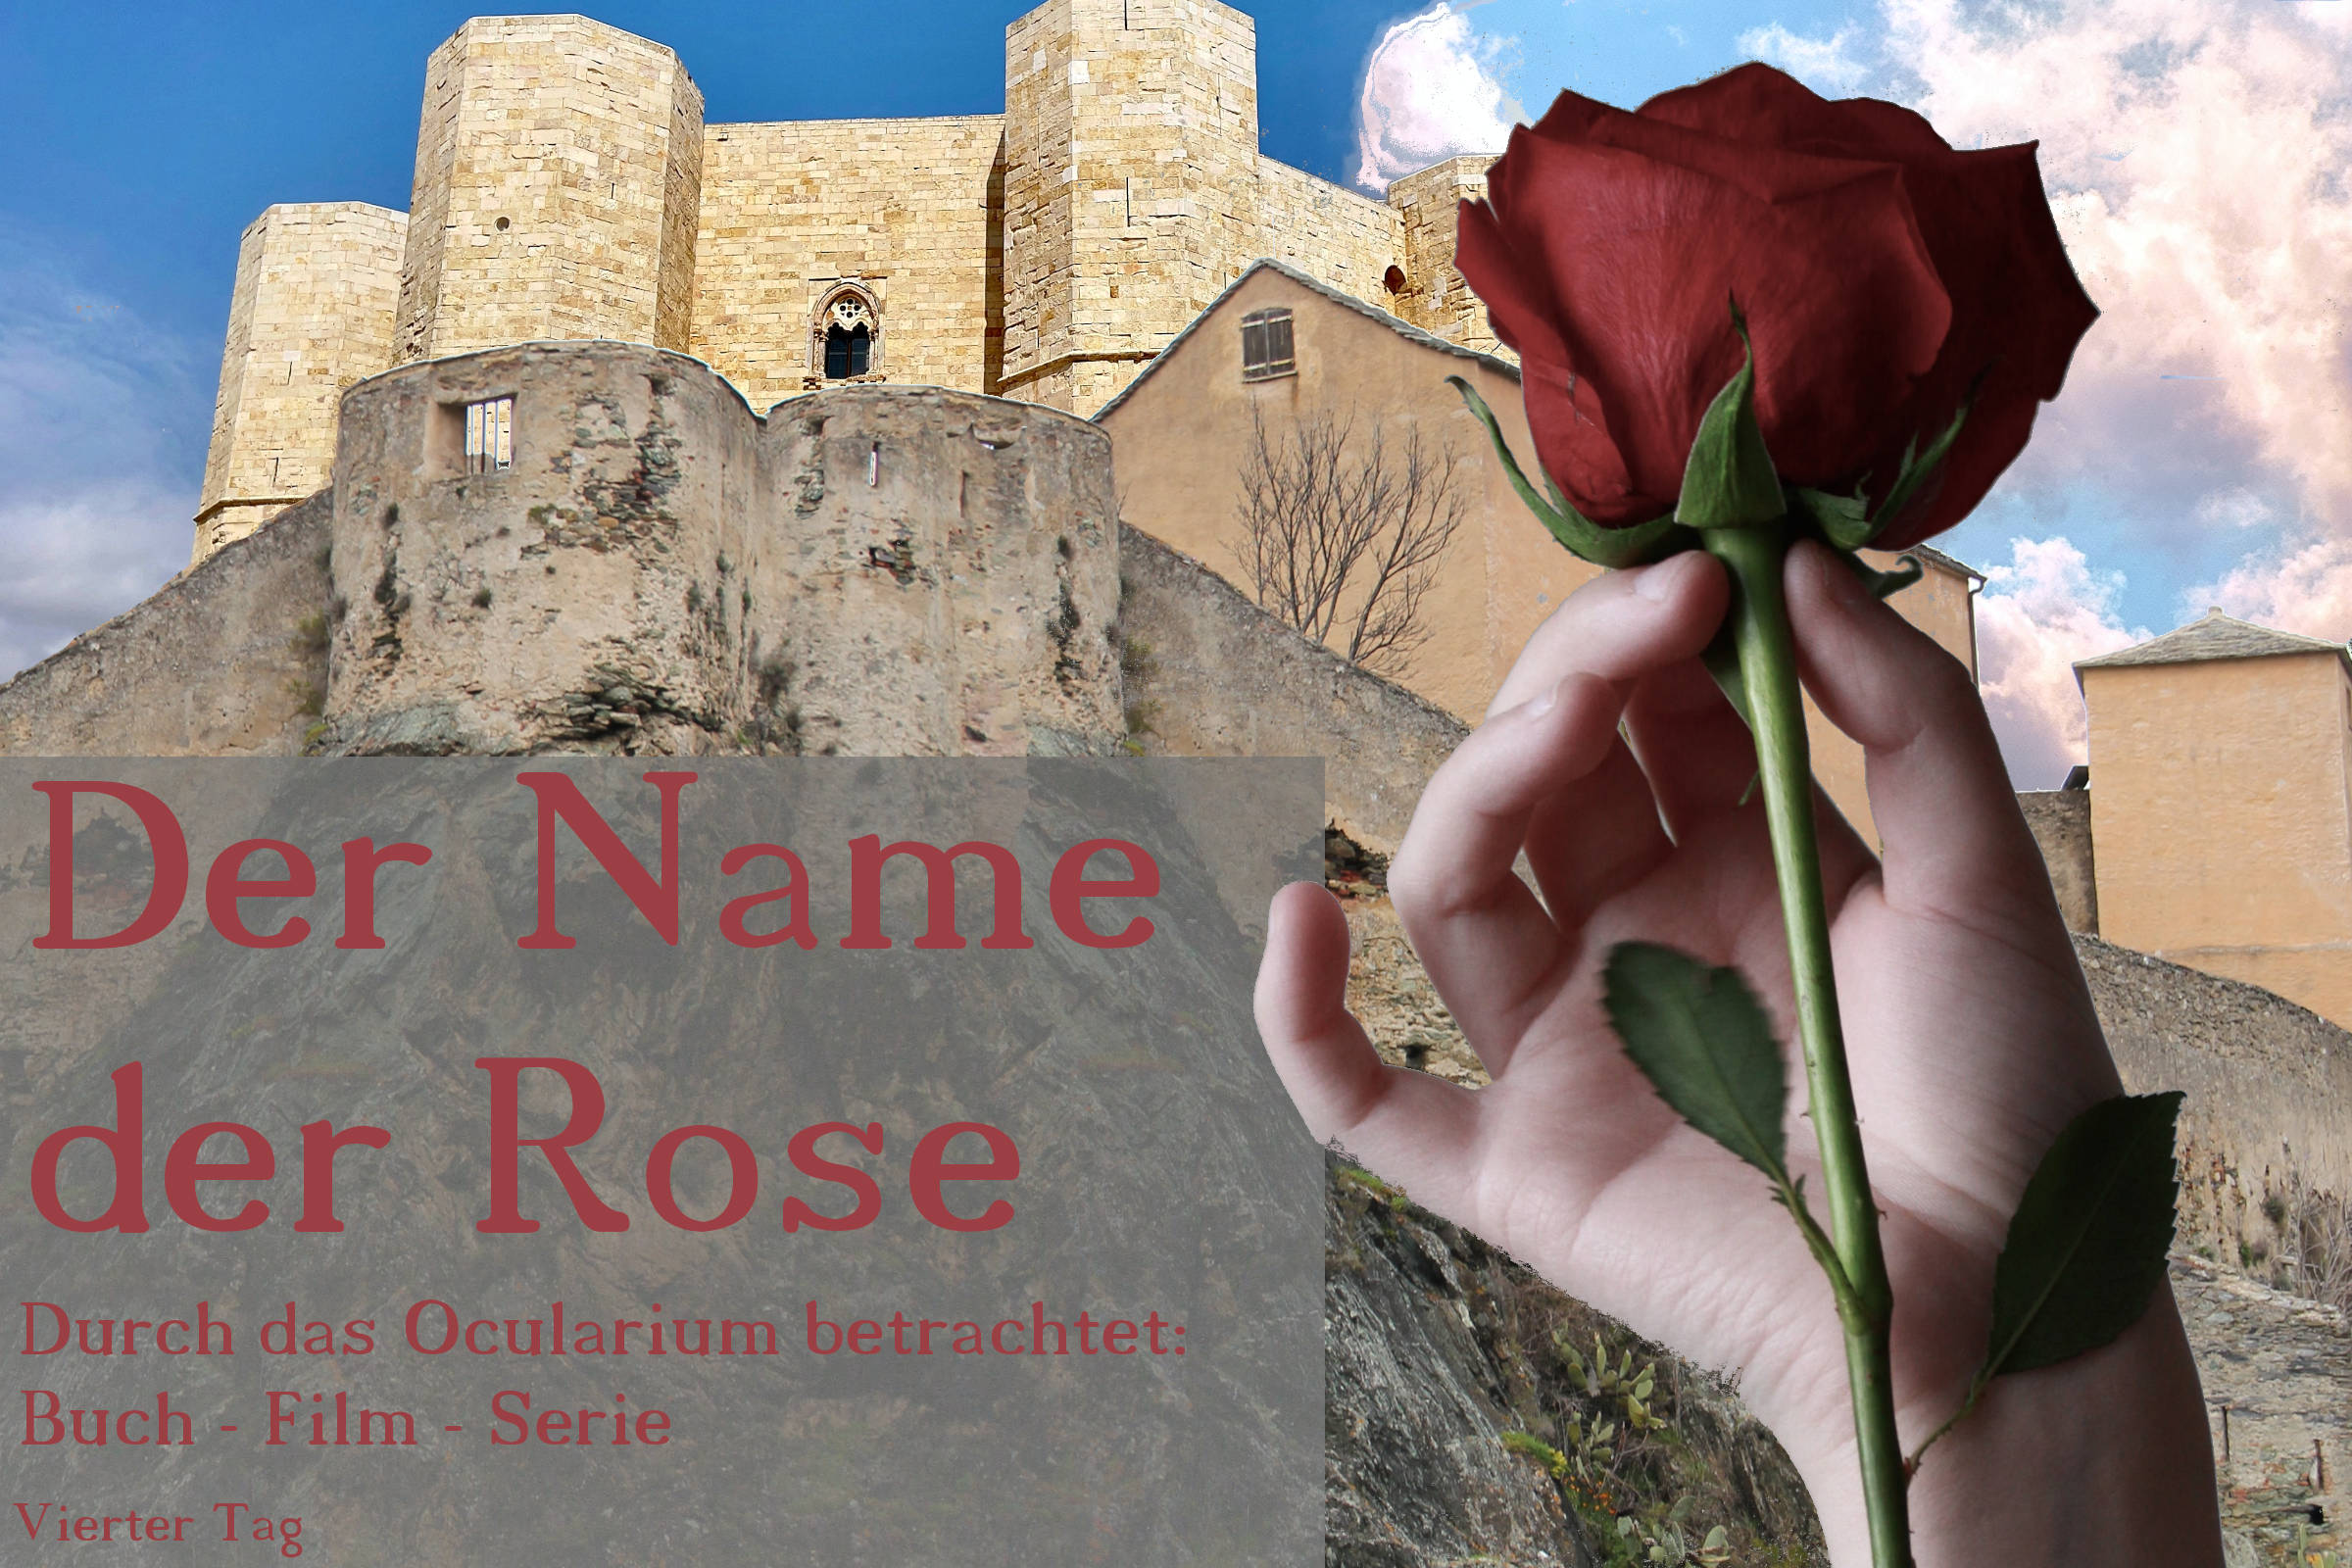 Der Name der Rose – Durch das Ocularium betrachtet: Buch – Film – Serie | Vierter Tag